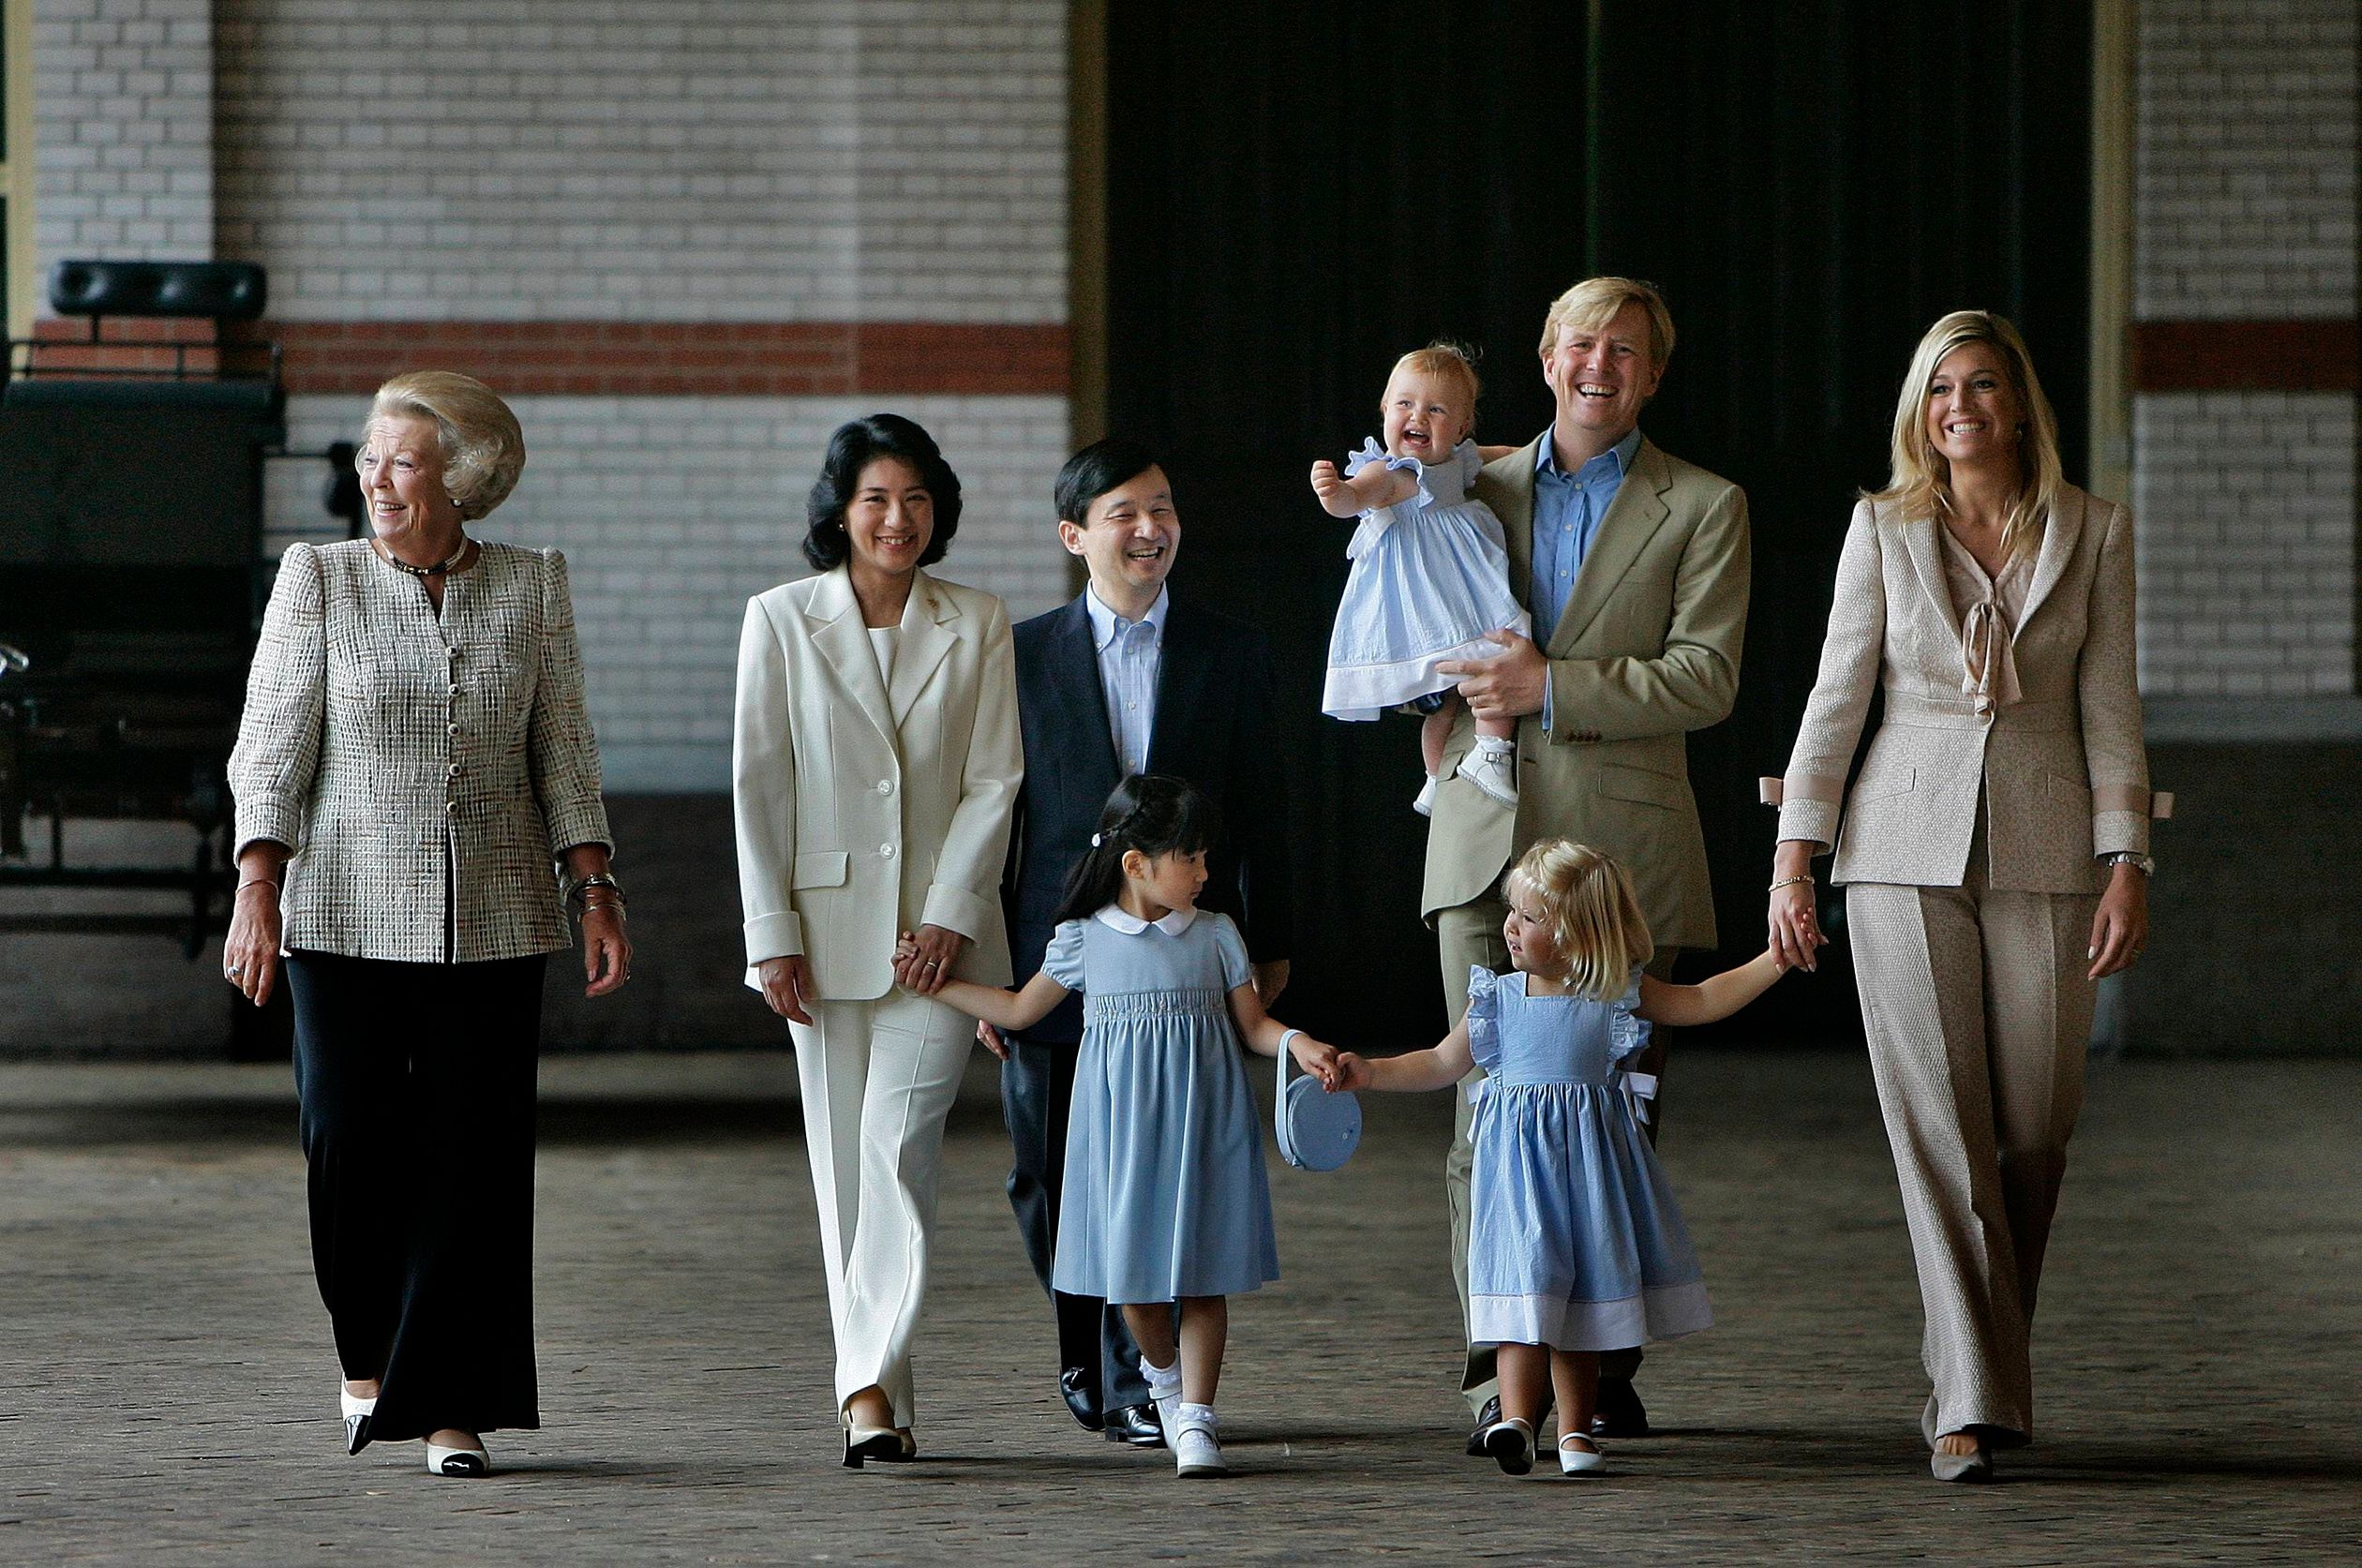 Máxima, Willem-Alexander, Beatrix en het kroonprinselijk paar uit Japan gaan met hun kinderen op de